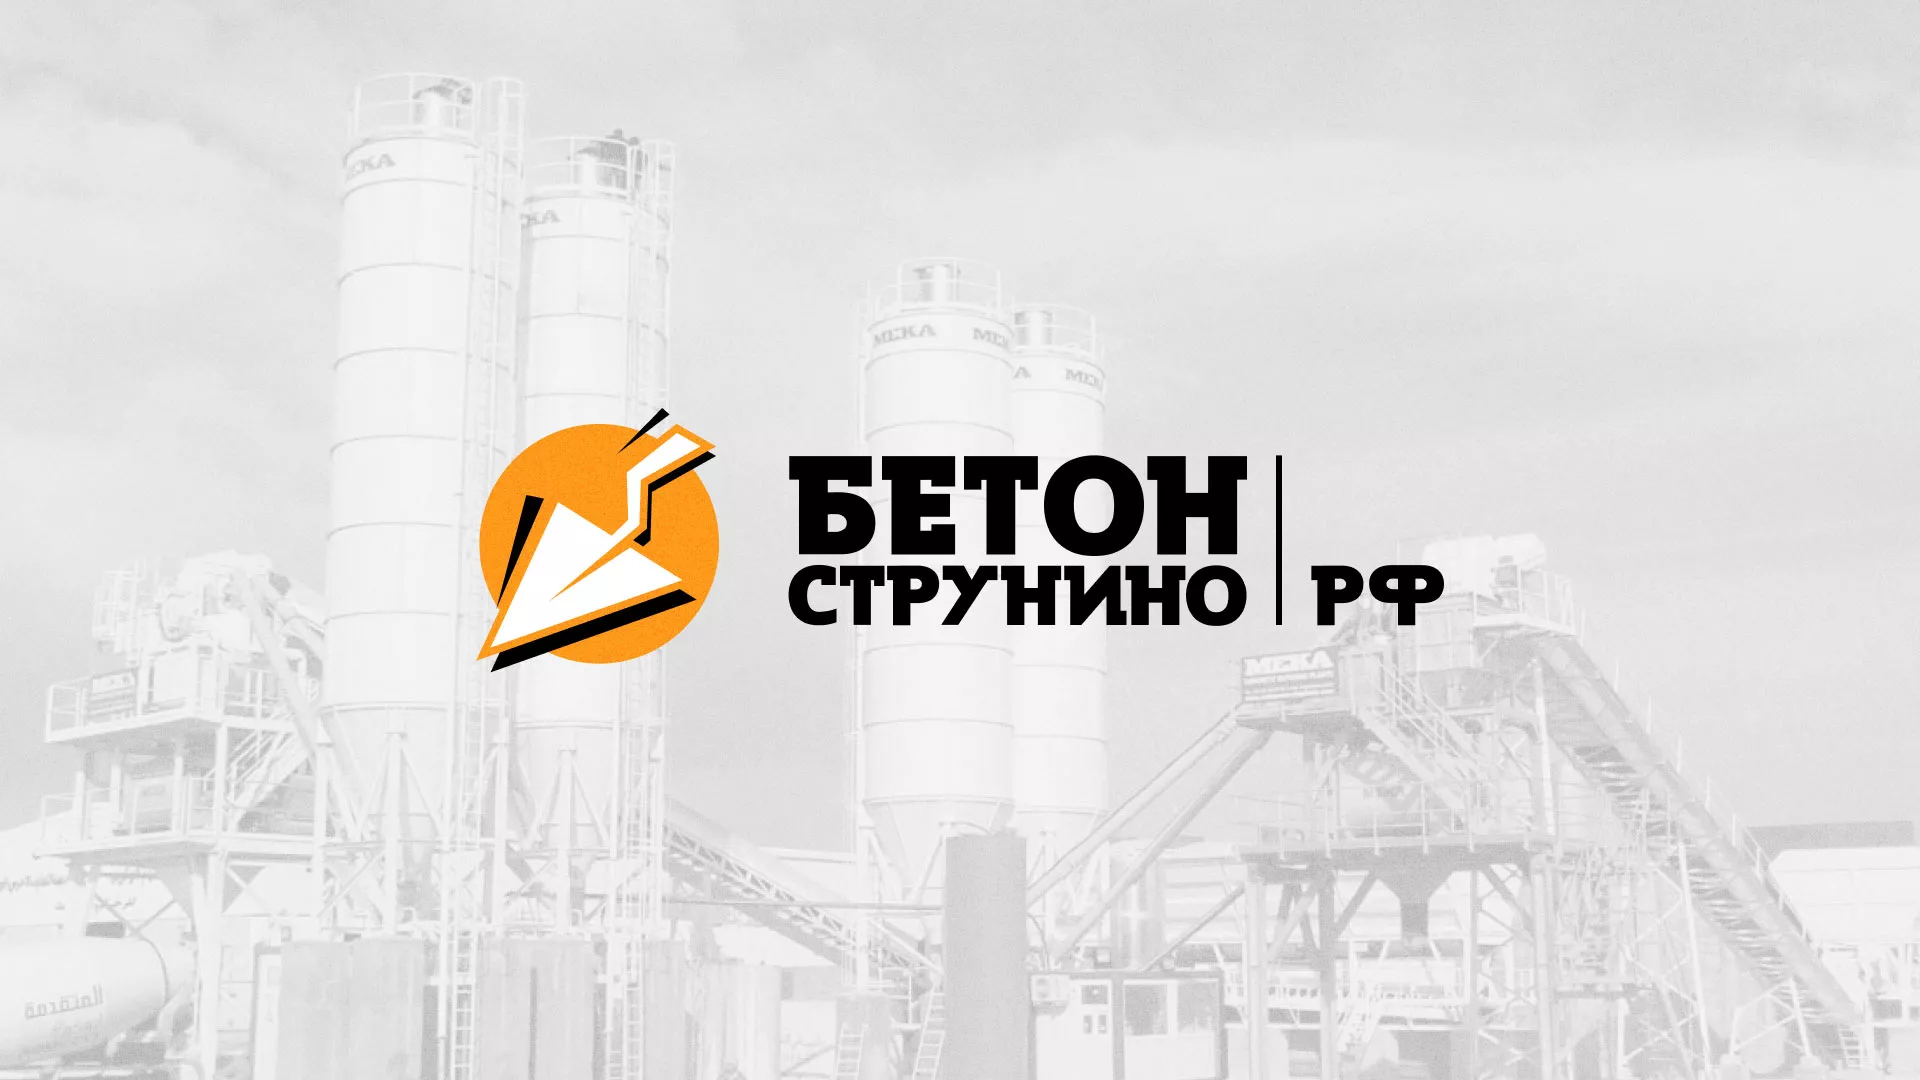 Разработка логотипа для бетонного завода в Бугуруслане